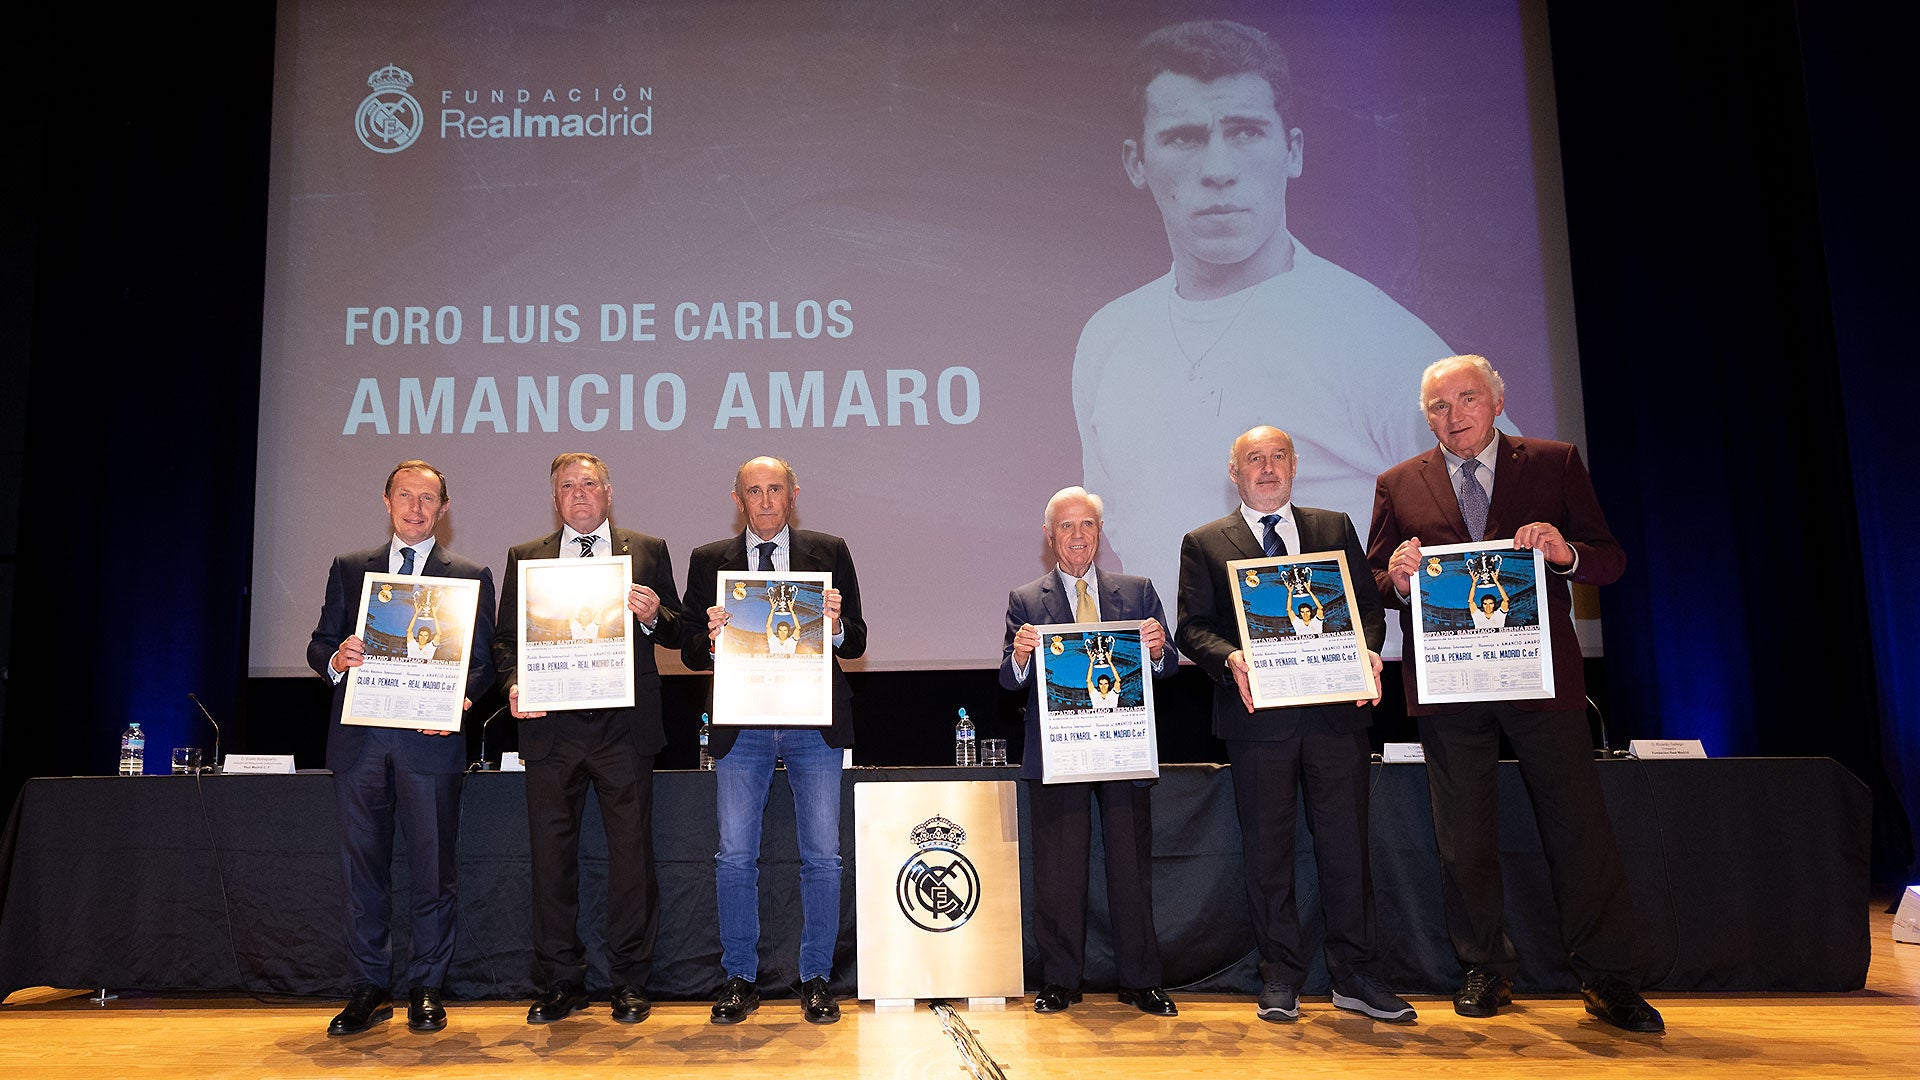 “Amancio llevaba los valores del Real Madrid, con espíritu ganador y respeto”